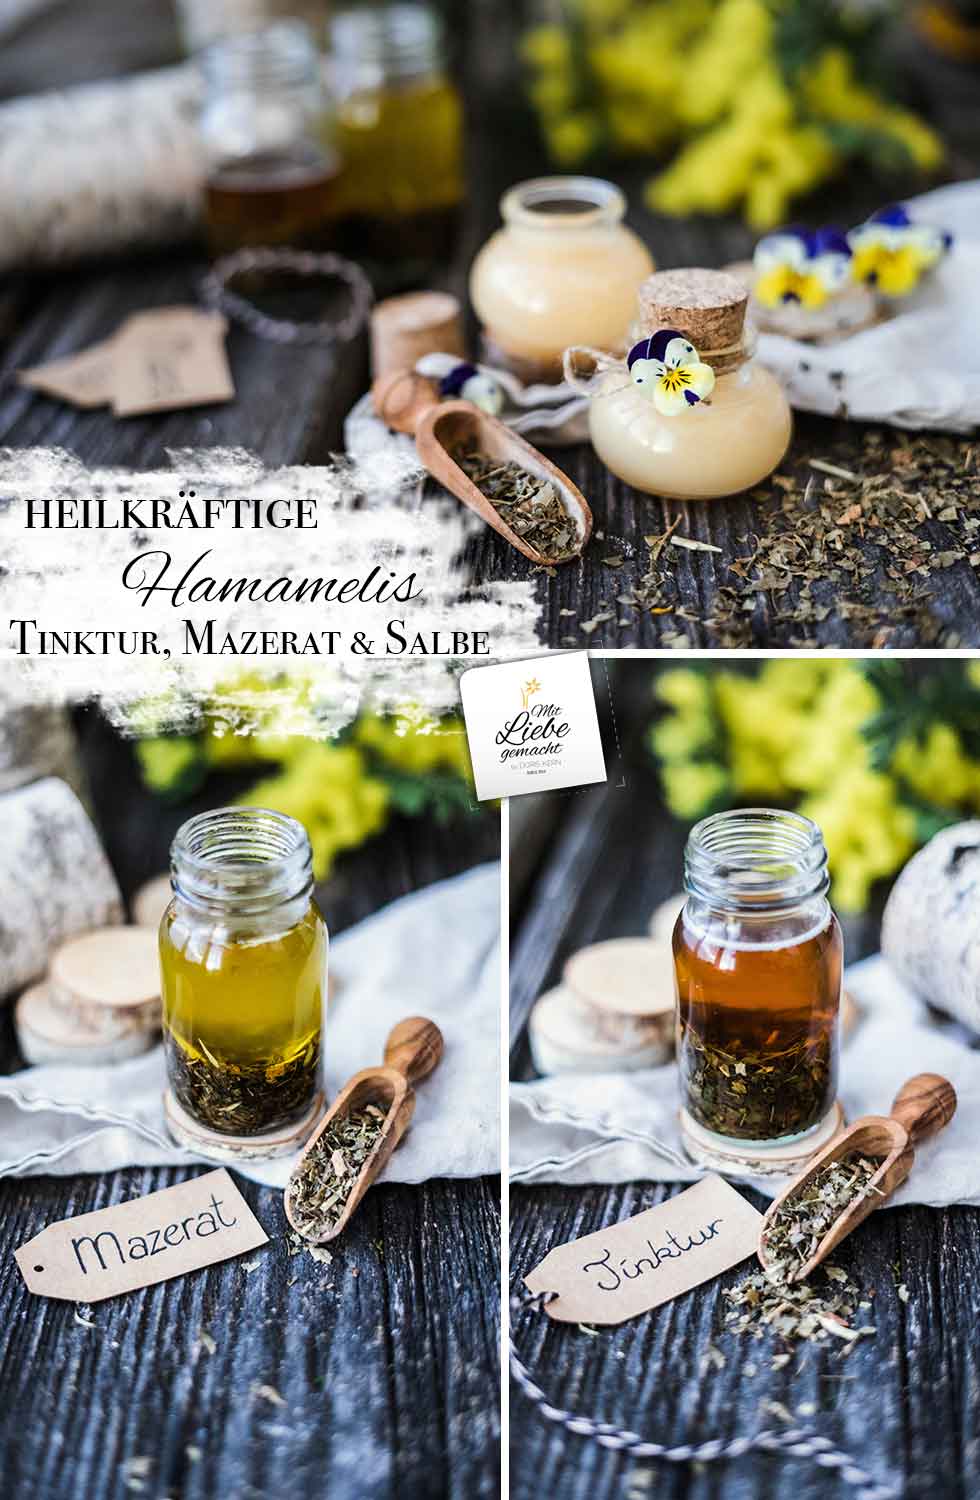 Heilkräftige Hamamelis – so entsteht eine Tinktur, Mazerat und Salbe